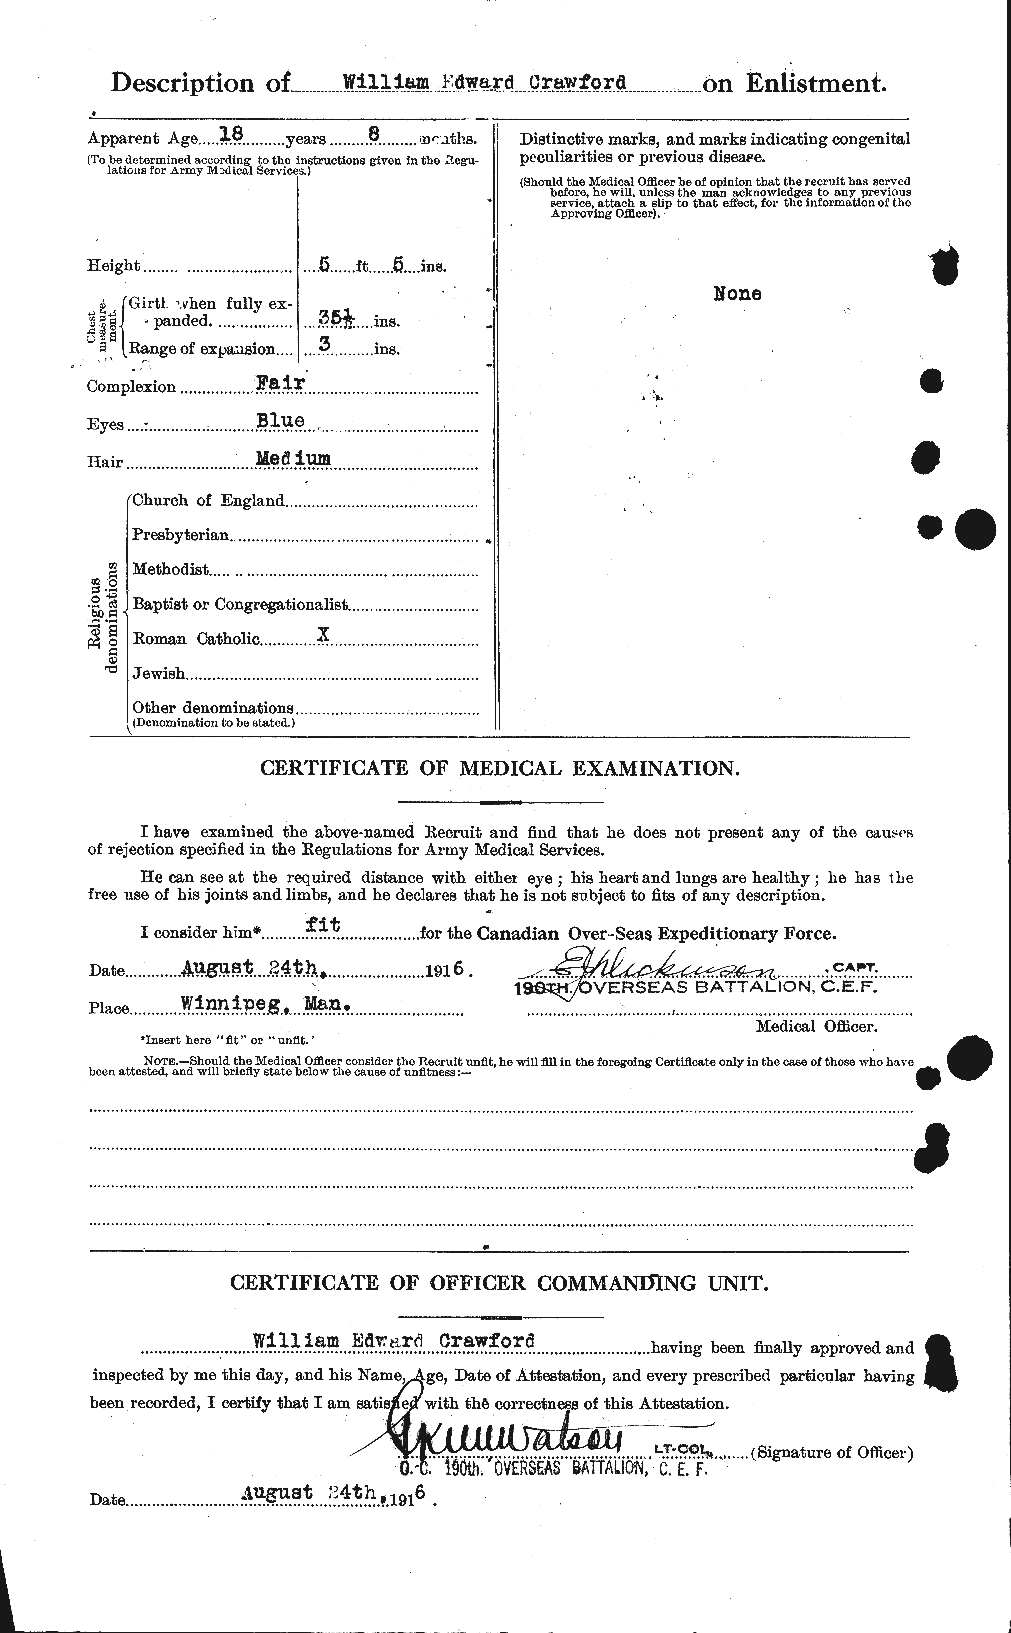 Dossiers du Personnel de la Première Guerre mondiale - CEC 061146b